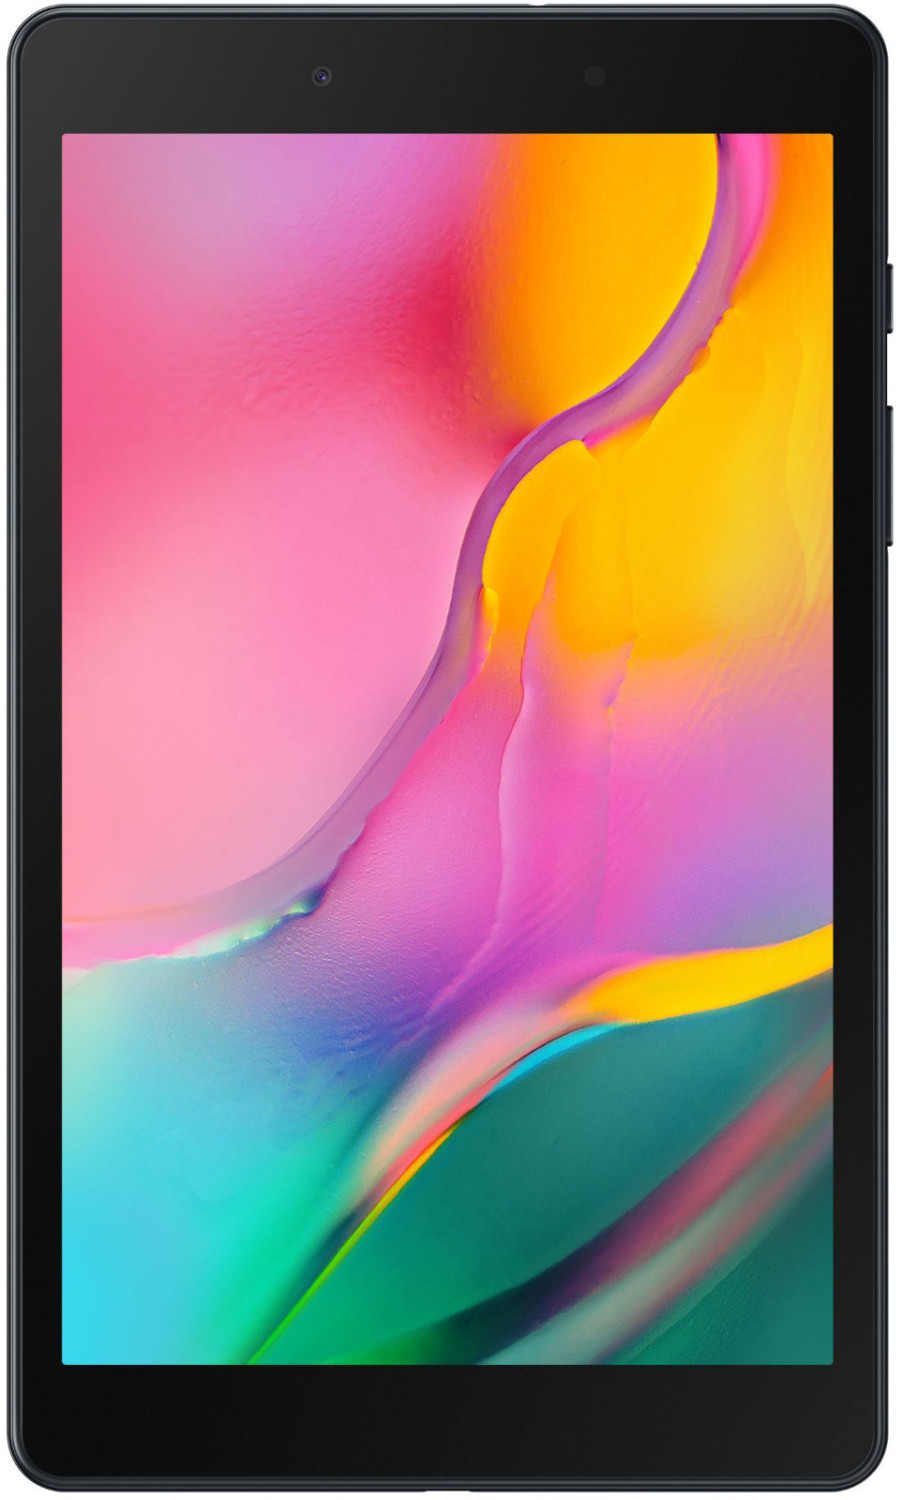 Samsung Galaxy Tab A 8.0 32GB LTE Black (2019)